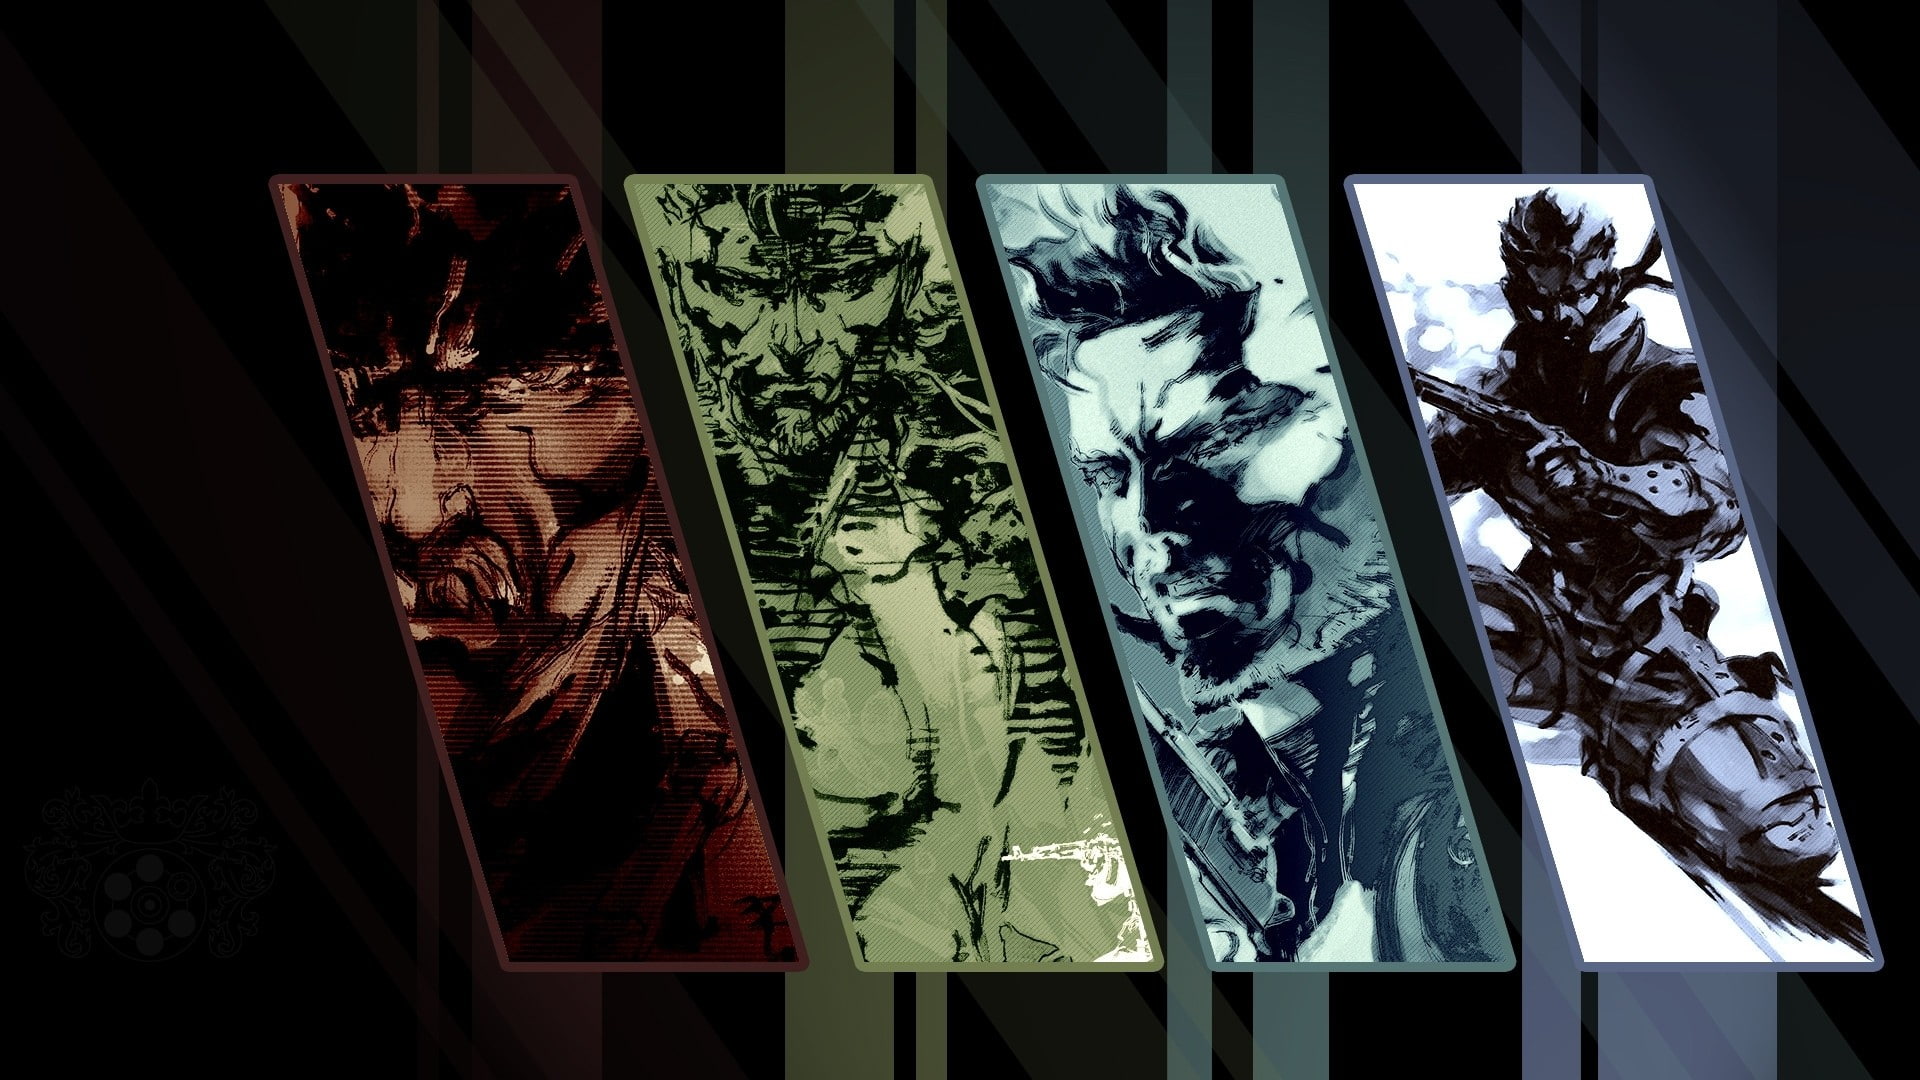 Metal Gear Solid, Metal Gear Solid 2, Metal Gear Solid 3: Snake Eater